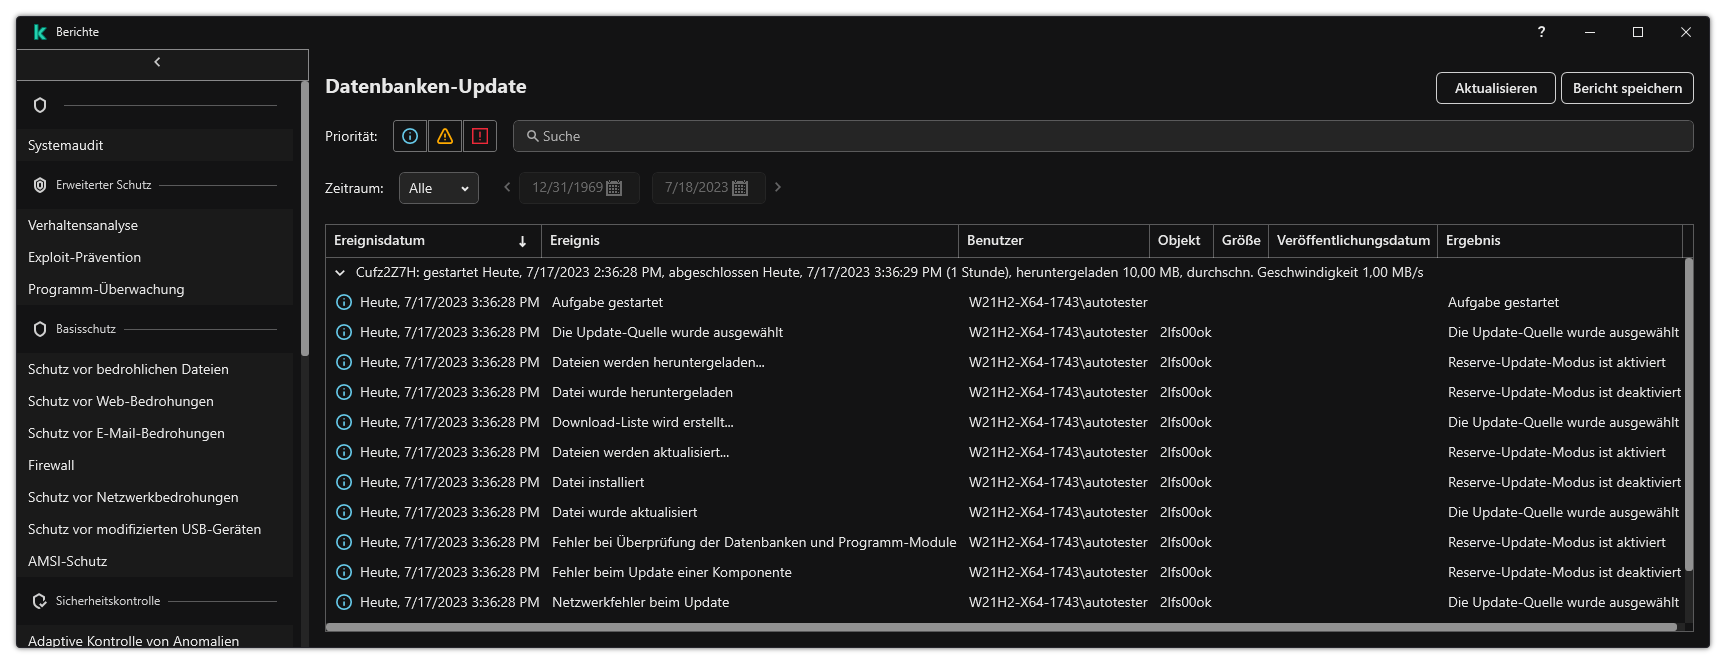 Ein Fenster mit der Ereignisliste im Bericht. Der Benutzer kann Ereignisse filtern bzw. sortieren und Berichte in einer Datei speichern.